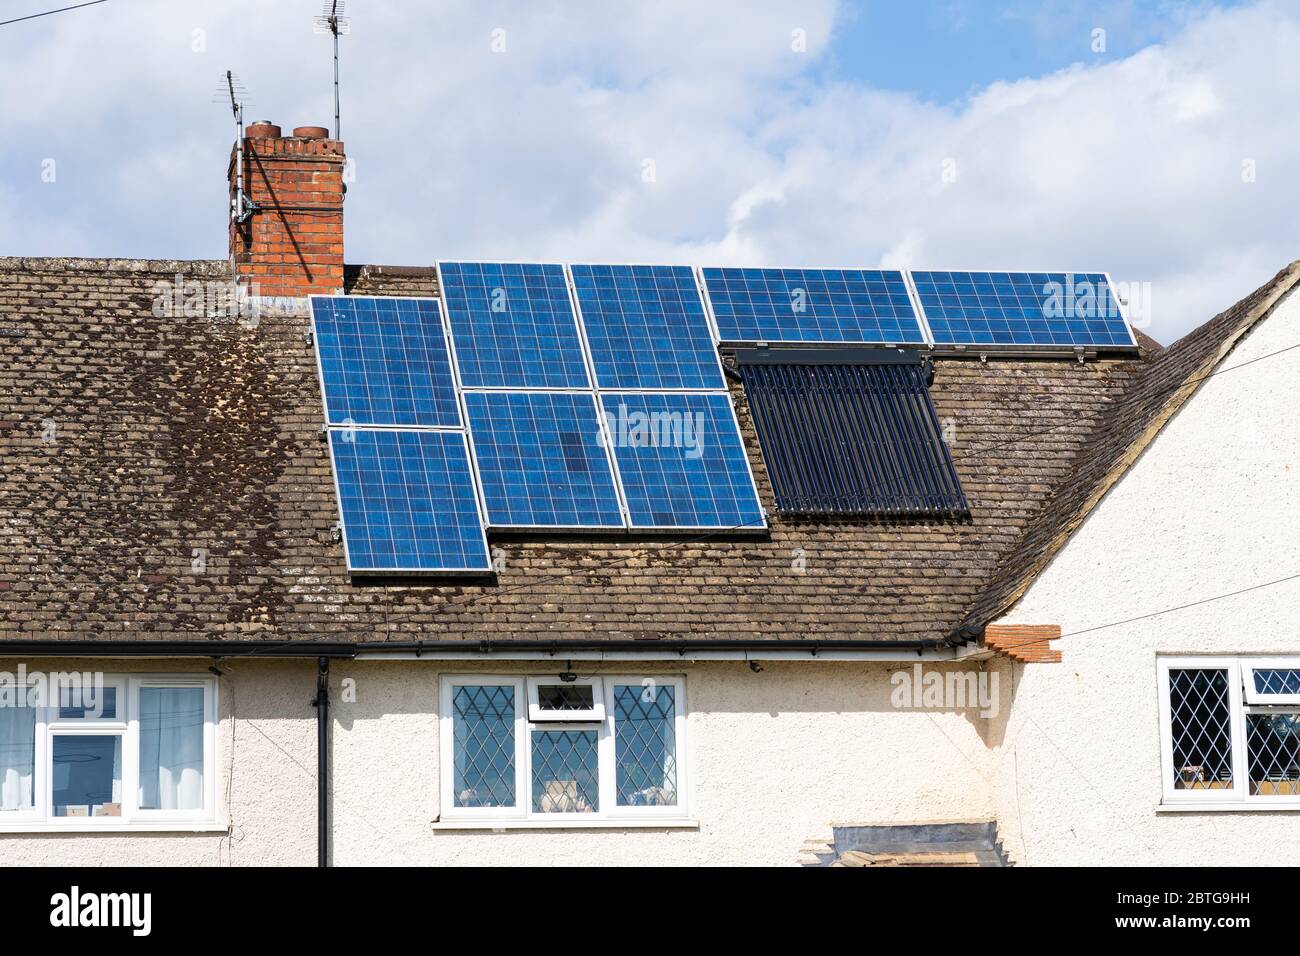 Module aus Solarstromanscharen (Photovoltaik - PV) und Solarwasserwärmern, die die Sonnenenergie auf einem Hausdach in Berkshire, Großbritannien, erfassen Stockfoto